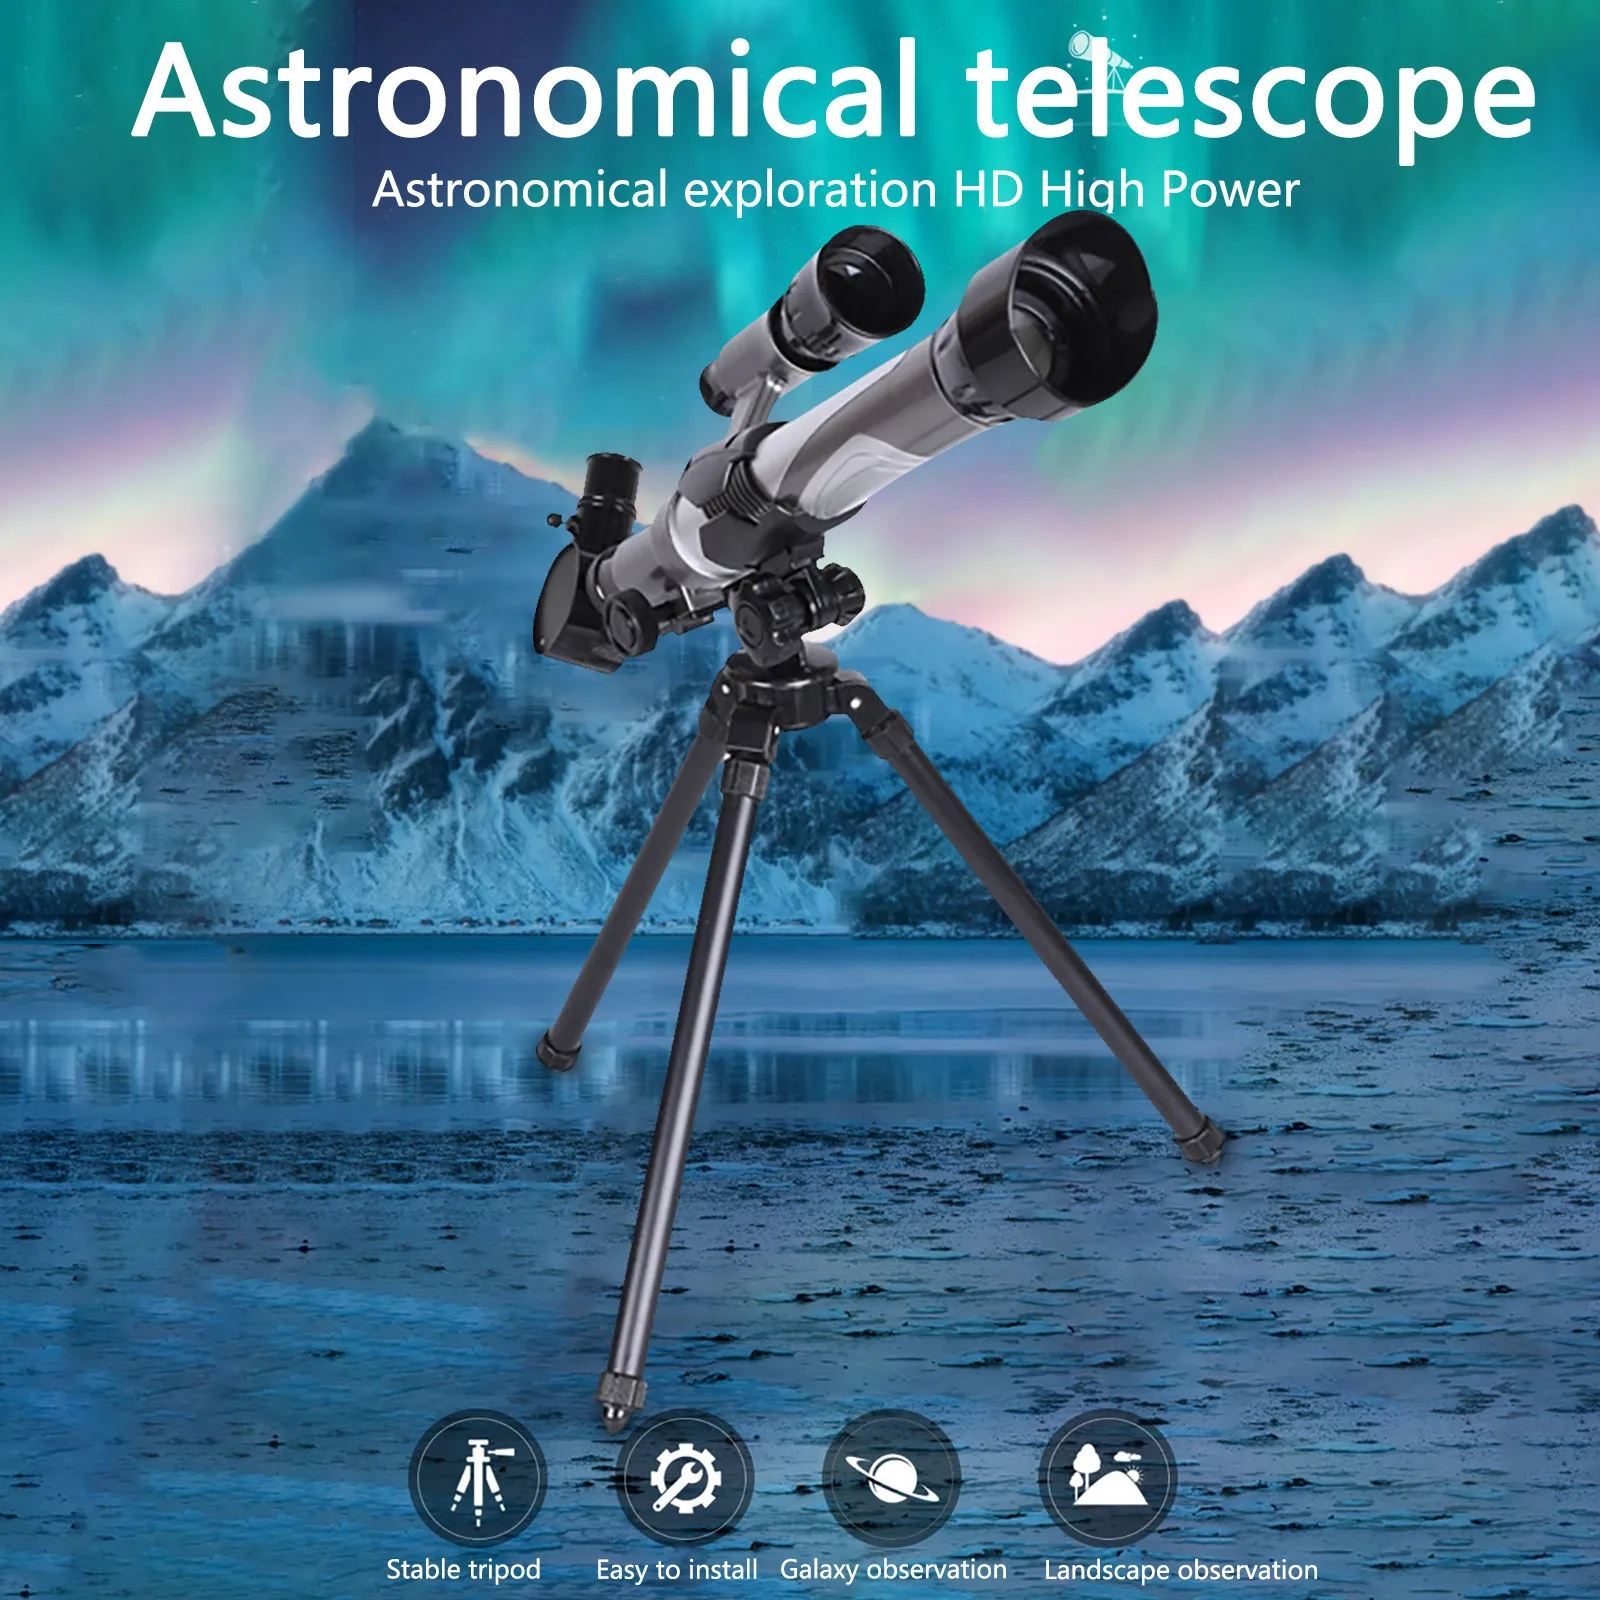 

Монокуляр для детей, научное образование, астрономический телескоп, игрушки, высокомощный монокуляр, вводные научные учебные пособия